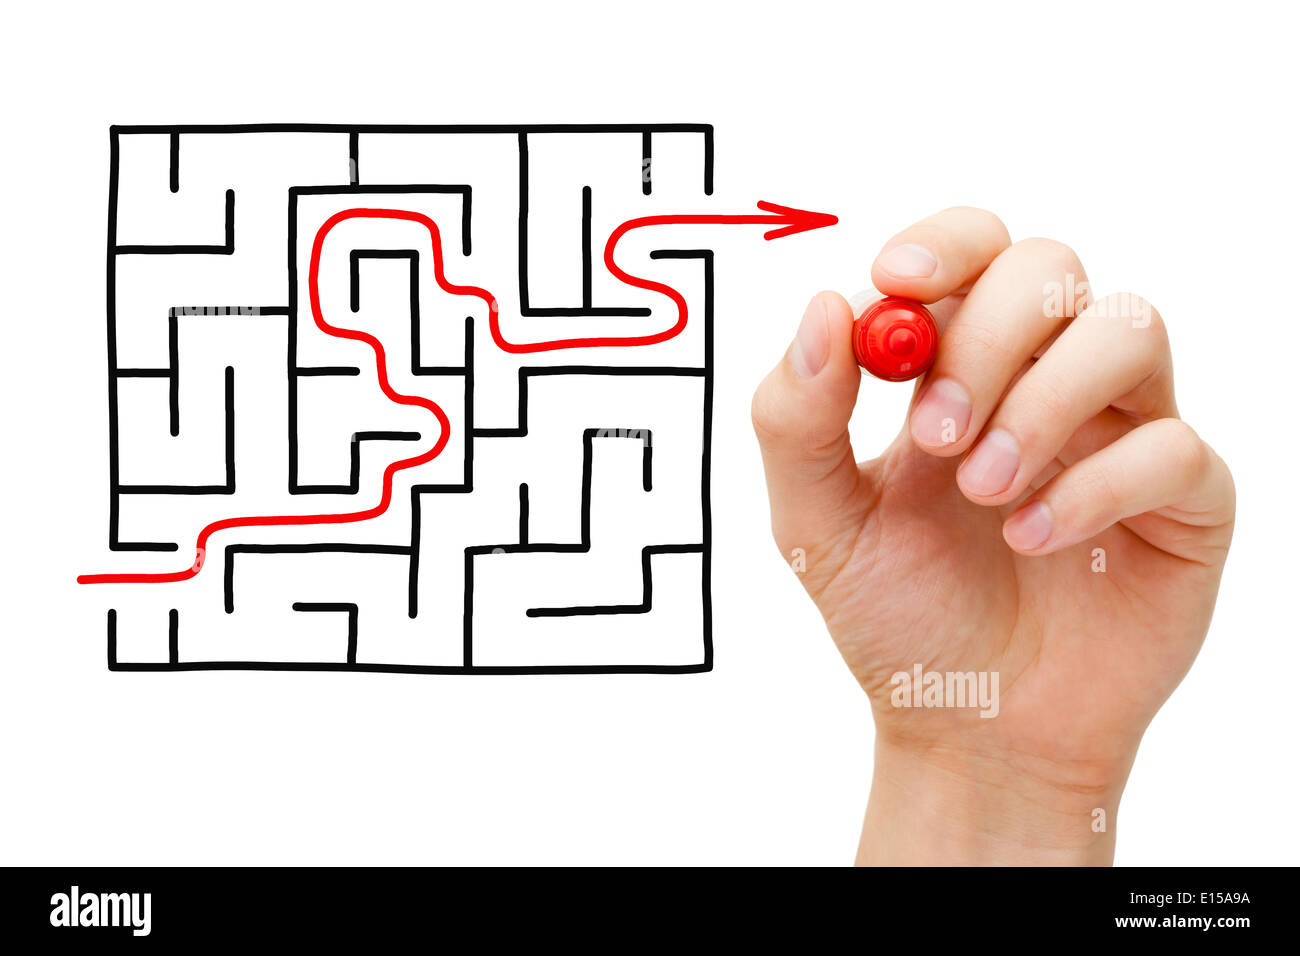 Handzeichnung einen roten Pfeil durch ein Labyrinth gehen. Konzept über die Suche nach einer Lösung für eine schwierige Aufgabe. Stockfoto